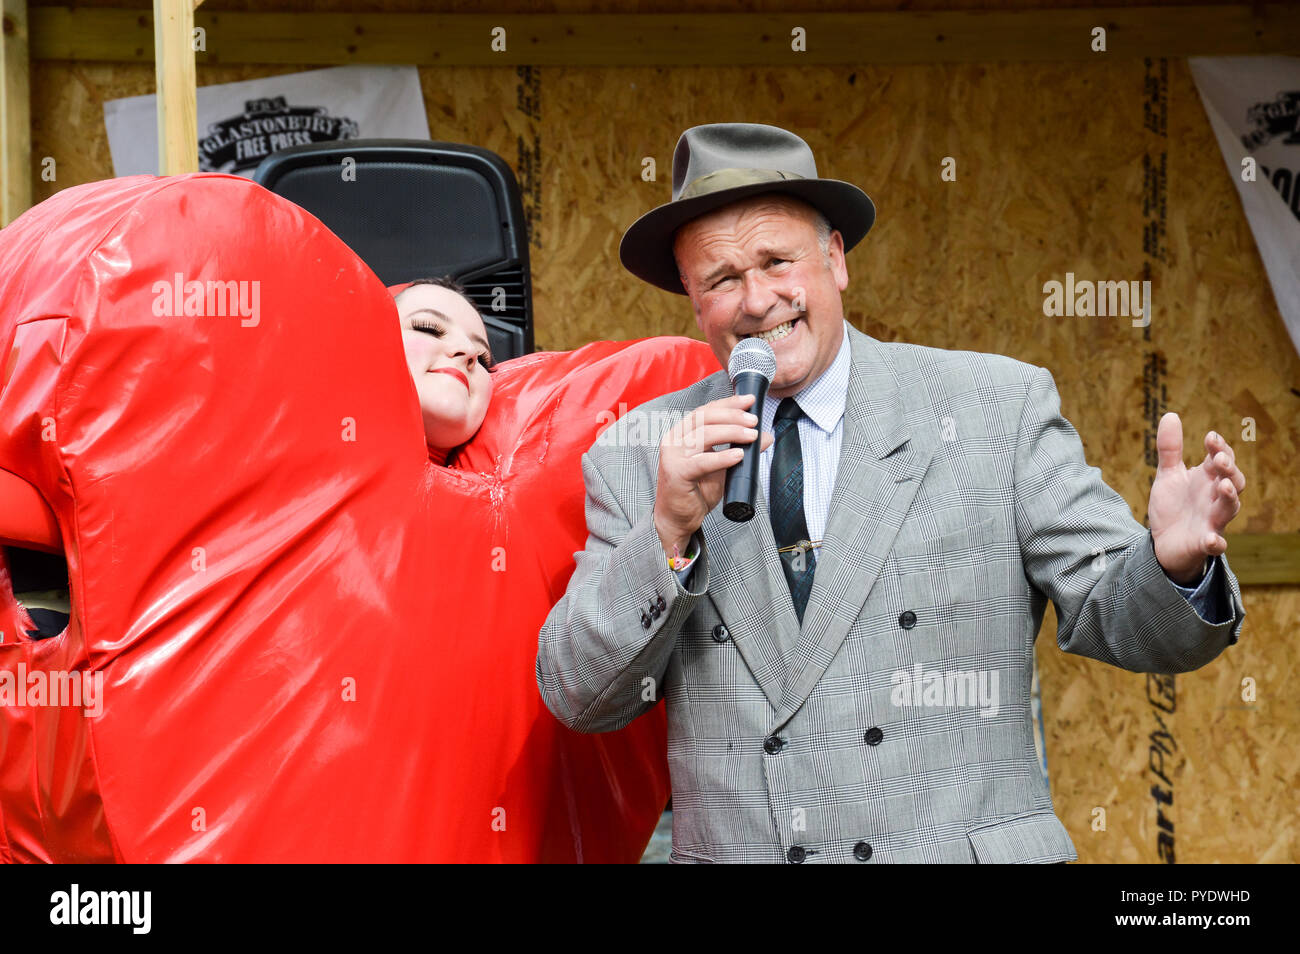 Giugno 28th, 2015.festival di Glastonbury, Regno Unito. Un cantante uomo vestito come un 1940s crooner. Il canto a Glastonbury accanto a una donna vestita come un cuore rosso Foto Stock